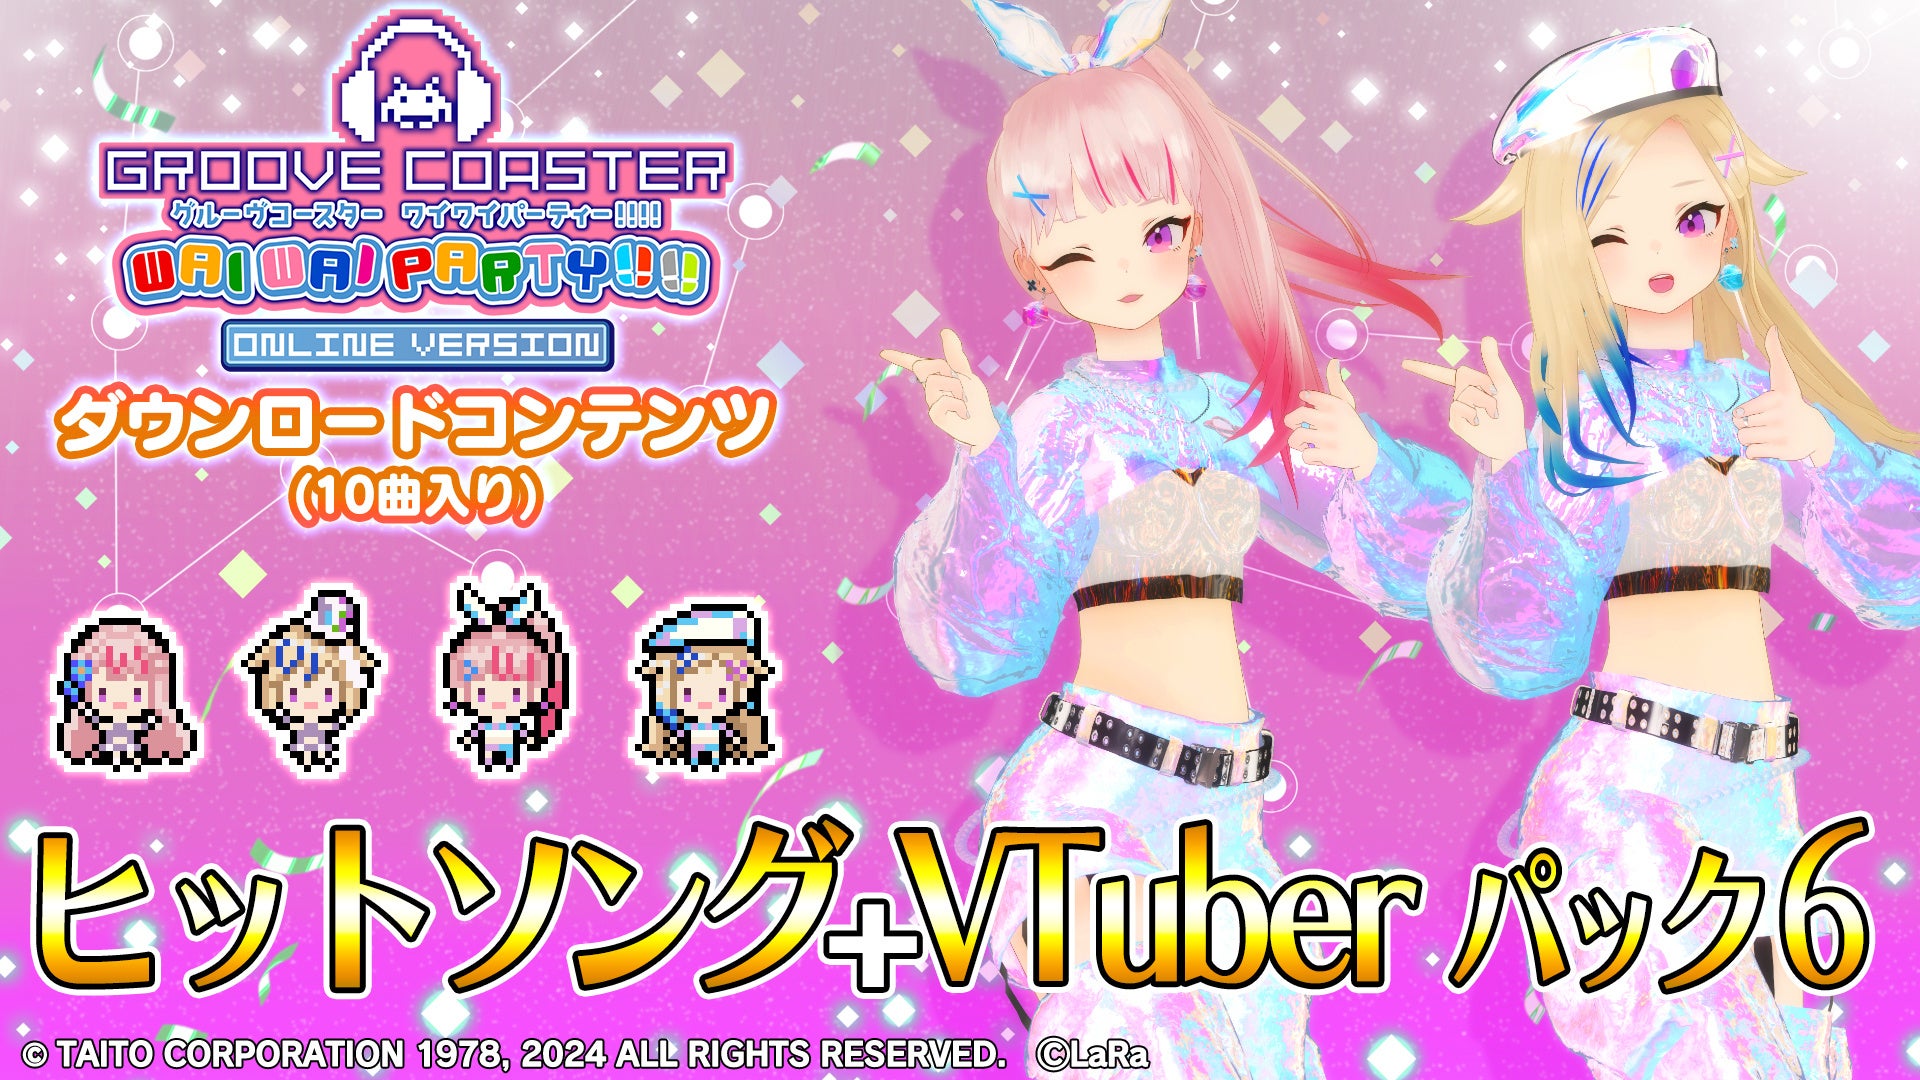 『グルーヴコースター ワイワイパーティー!!!!』「ヒットソング + VTuber パック6」4月25日（木）より配信開始!